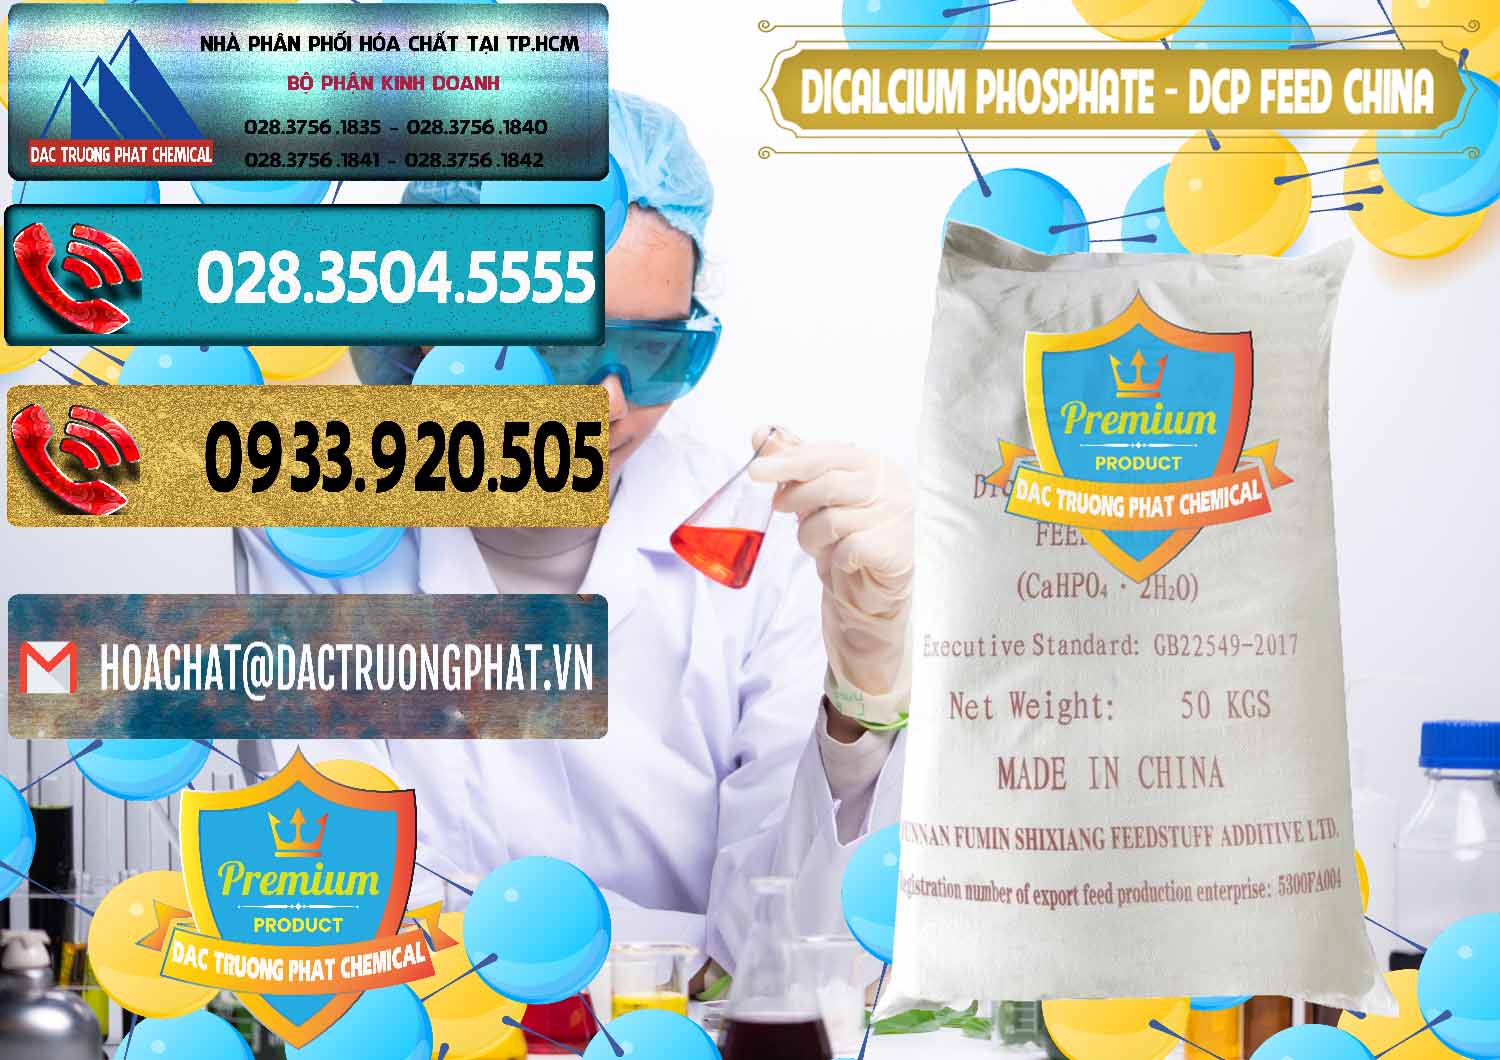 Đơn vị chuyên cung ứng và bán Dicalcium Phosphate - DCP Feed Grade Trung Quốc China - 0296 - Cty cung cấp và kinh doanh hóa chất tại TP.HCM - hoachatdetnhuom.com